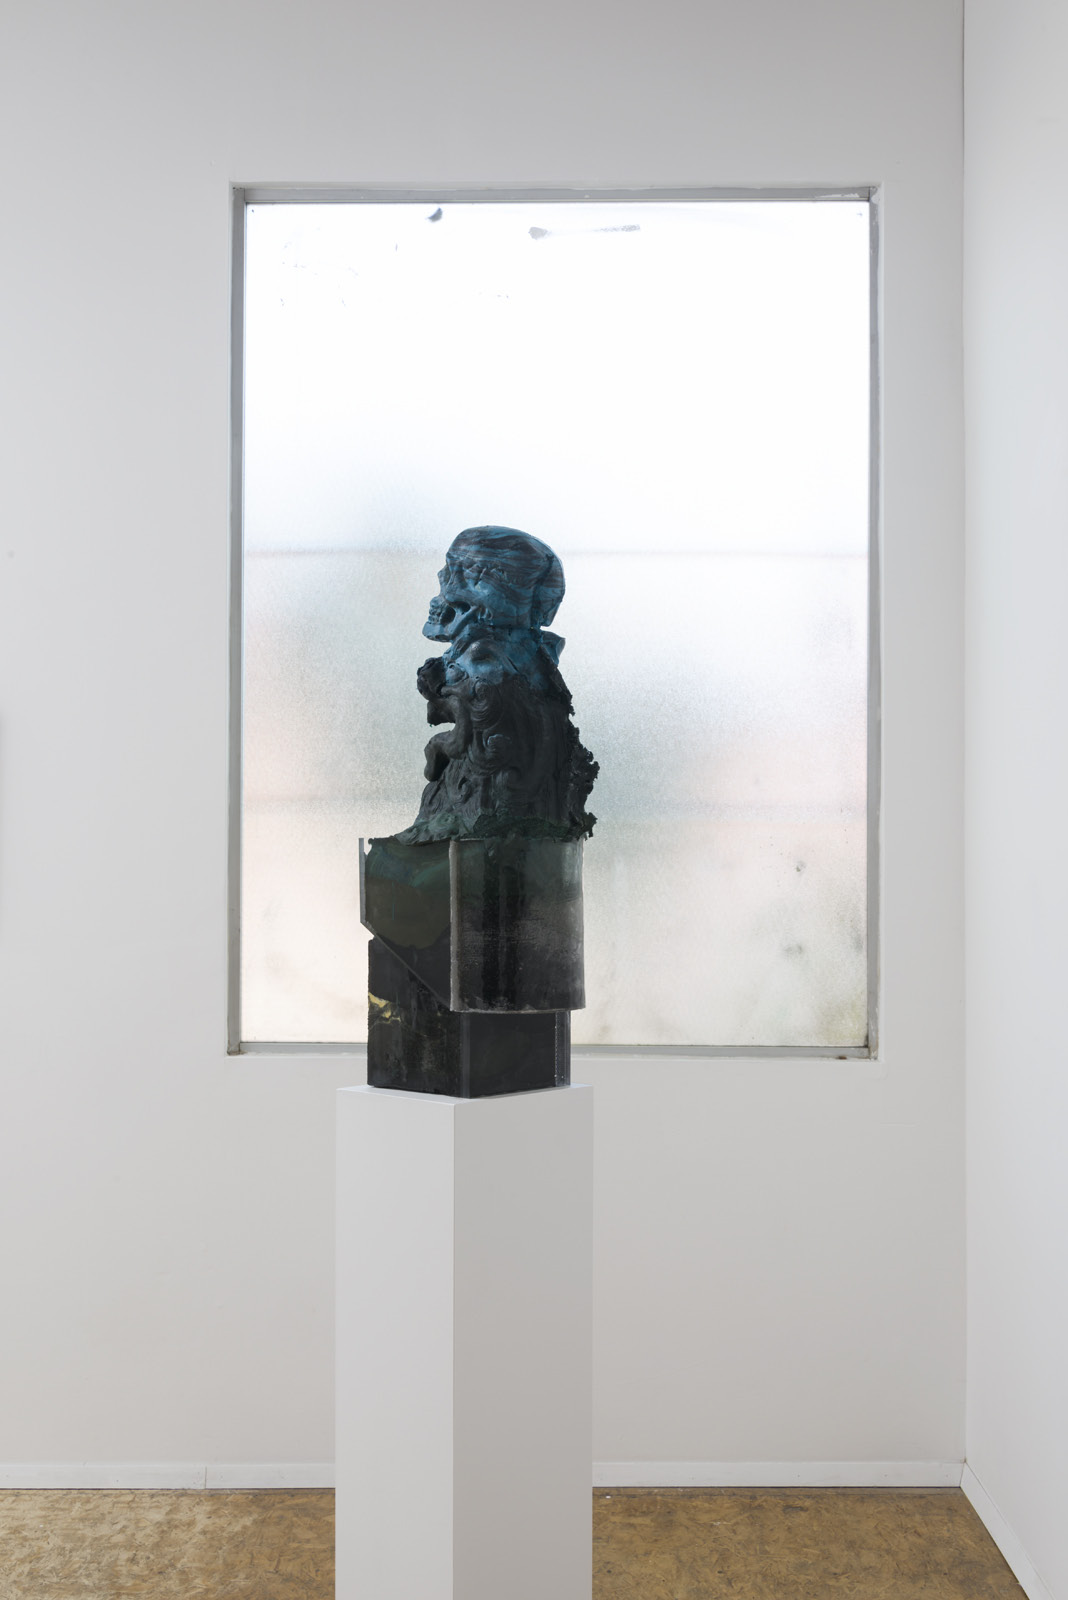  Emanuel Röhss  High Rise,  2016 pigmented urethane foam, acrylic glass, epoxy, urethane resin  10 ¼ x 8 x 28 ¼ in. 